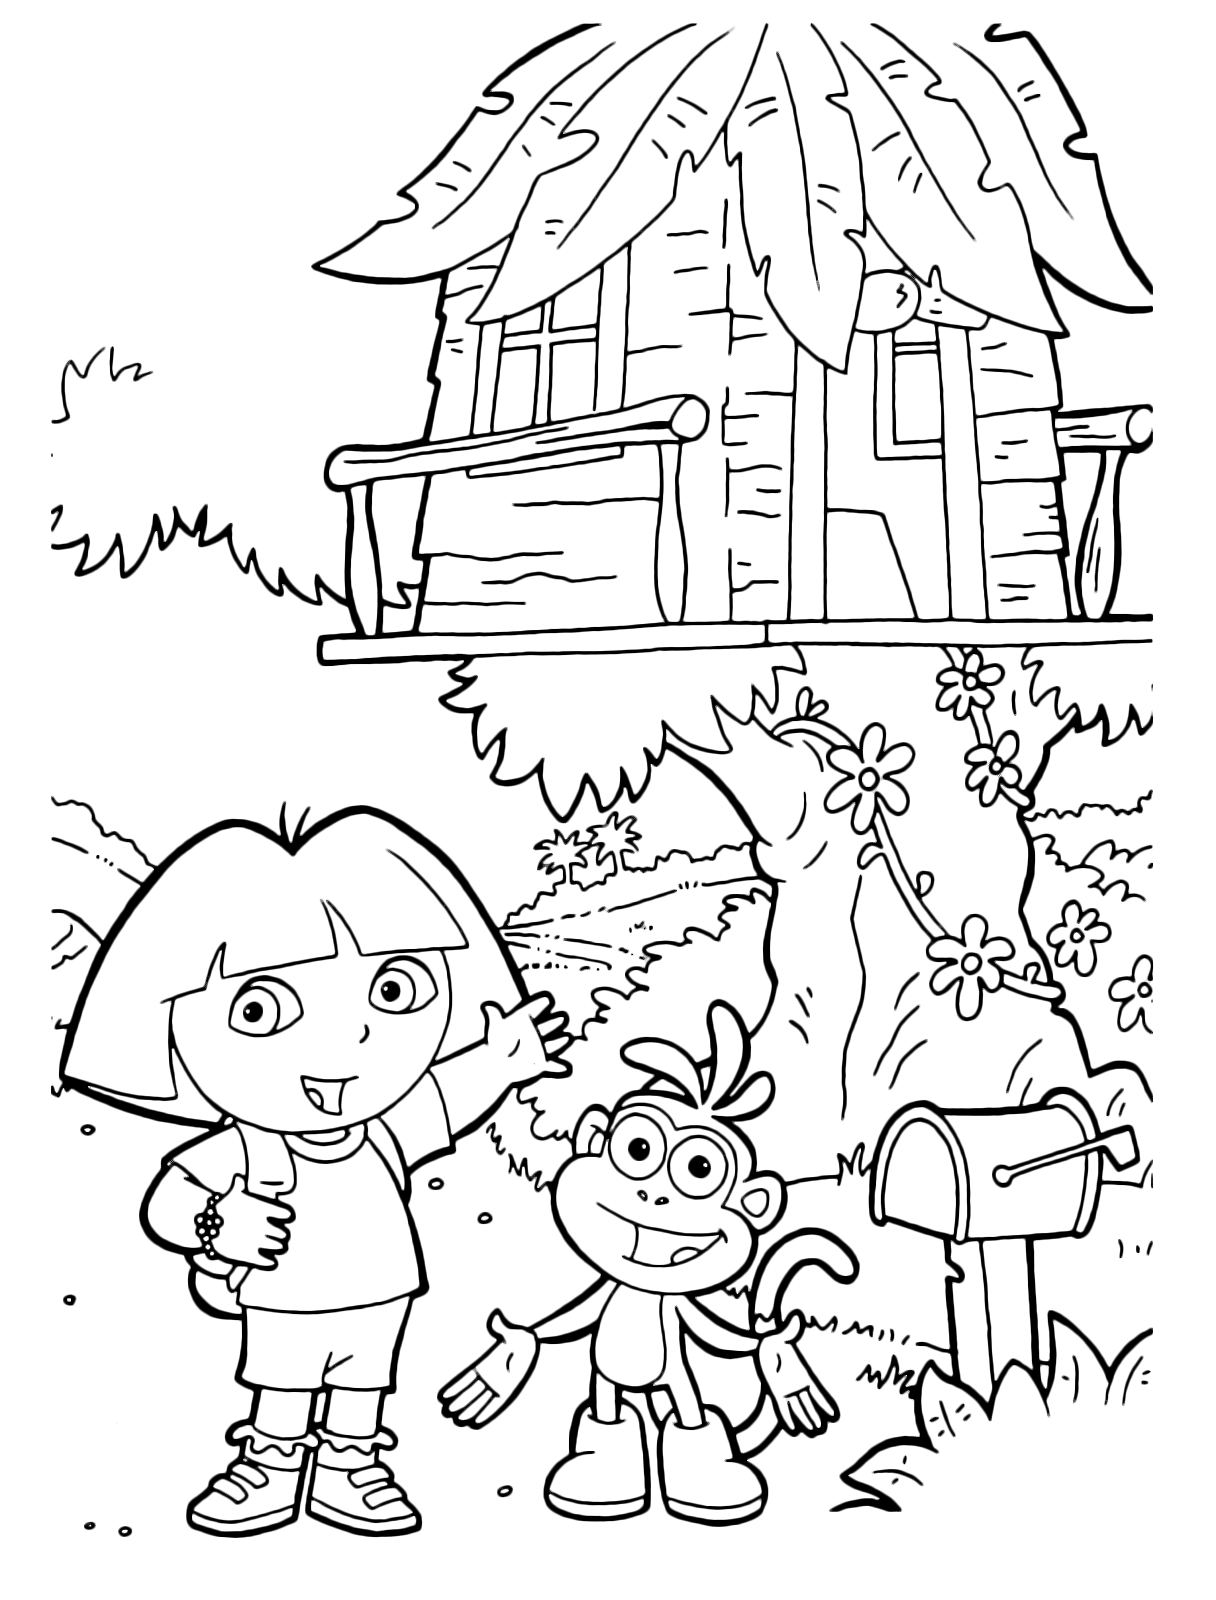 Dora l'esploratrice - Dora e Boots mostrano la casetta sull'albero